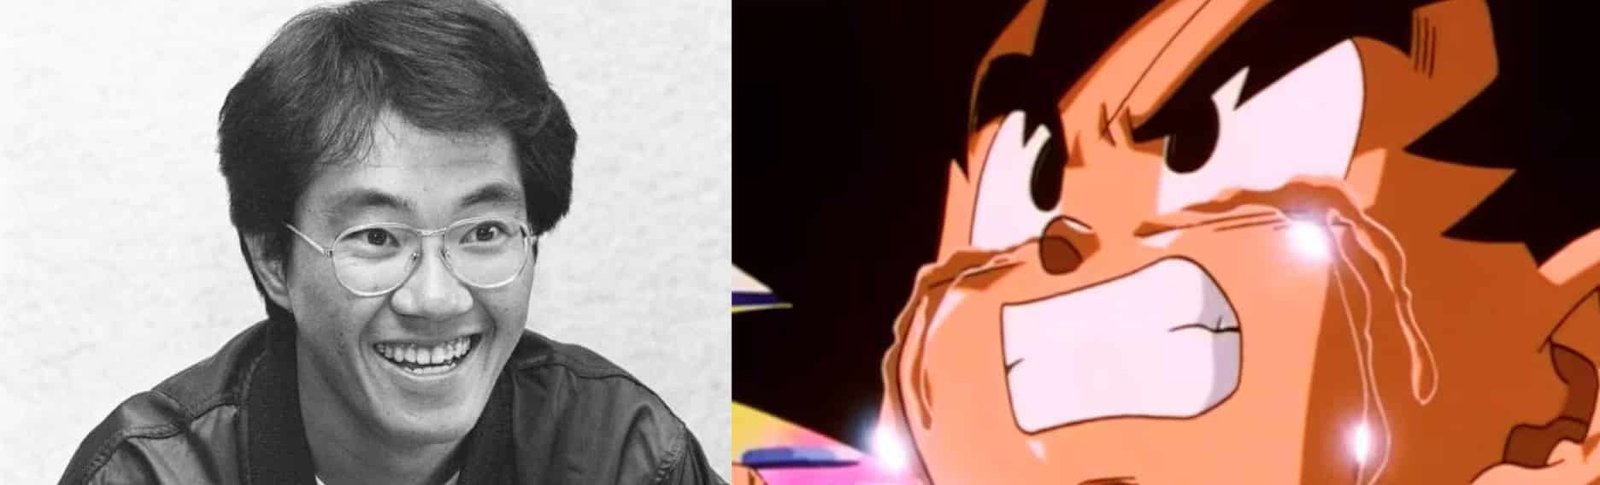 Le papa de Dragon Ball, Akira Toriyama, est décédé